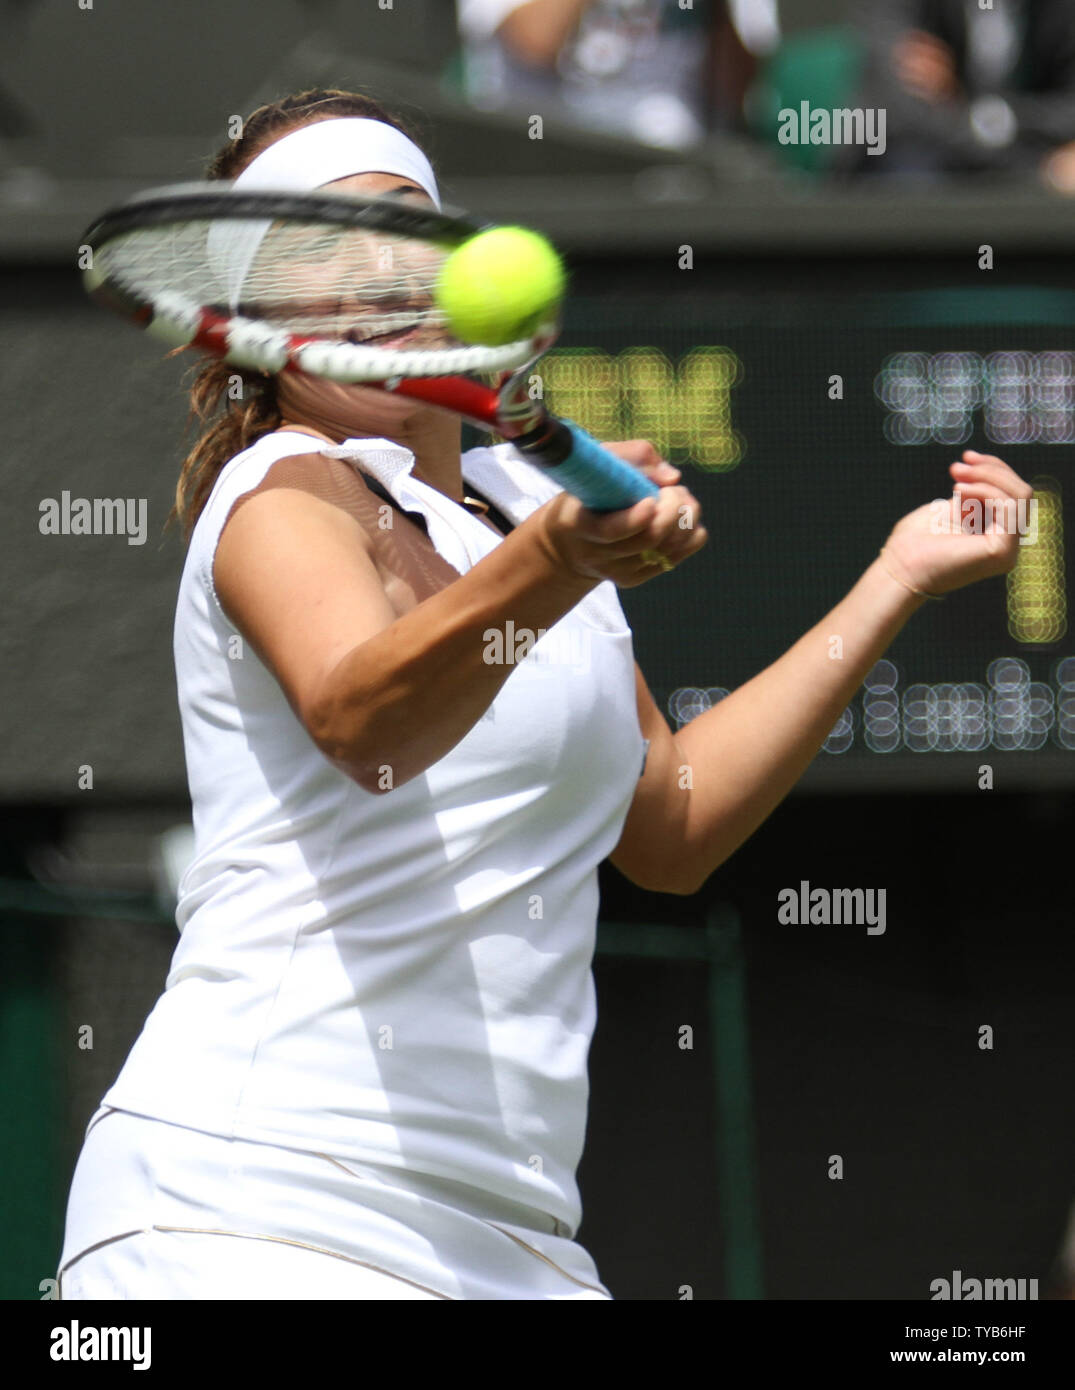 Frankreichs Aravane Rezai gibt den Ball in ihr Match gegen die USA Serena Williams am zweiten Tag des 125 Wimbledon Championships in Wimbledon, England am Dienstag, 21. Juni 2011. UPI/Hugo Philpott Stockfoto